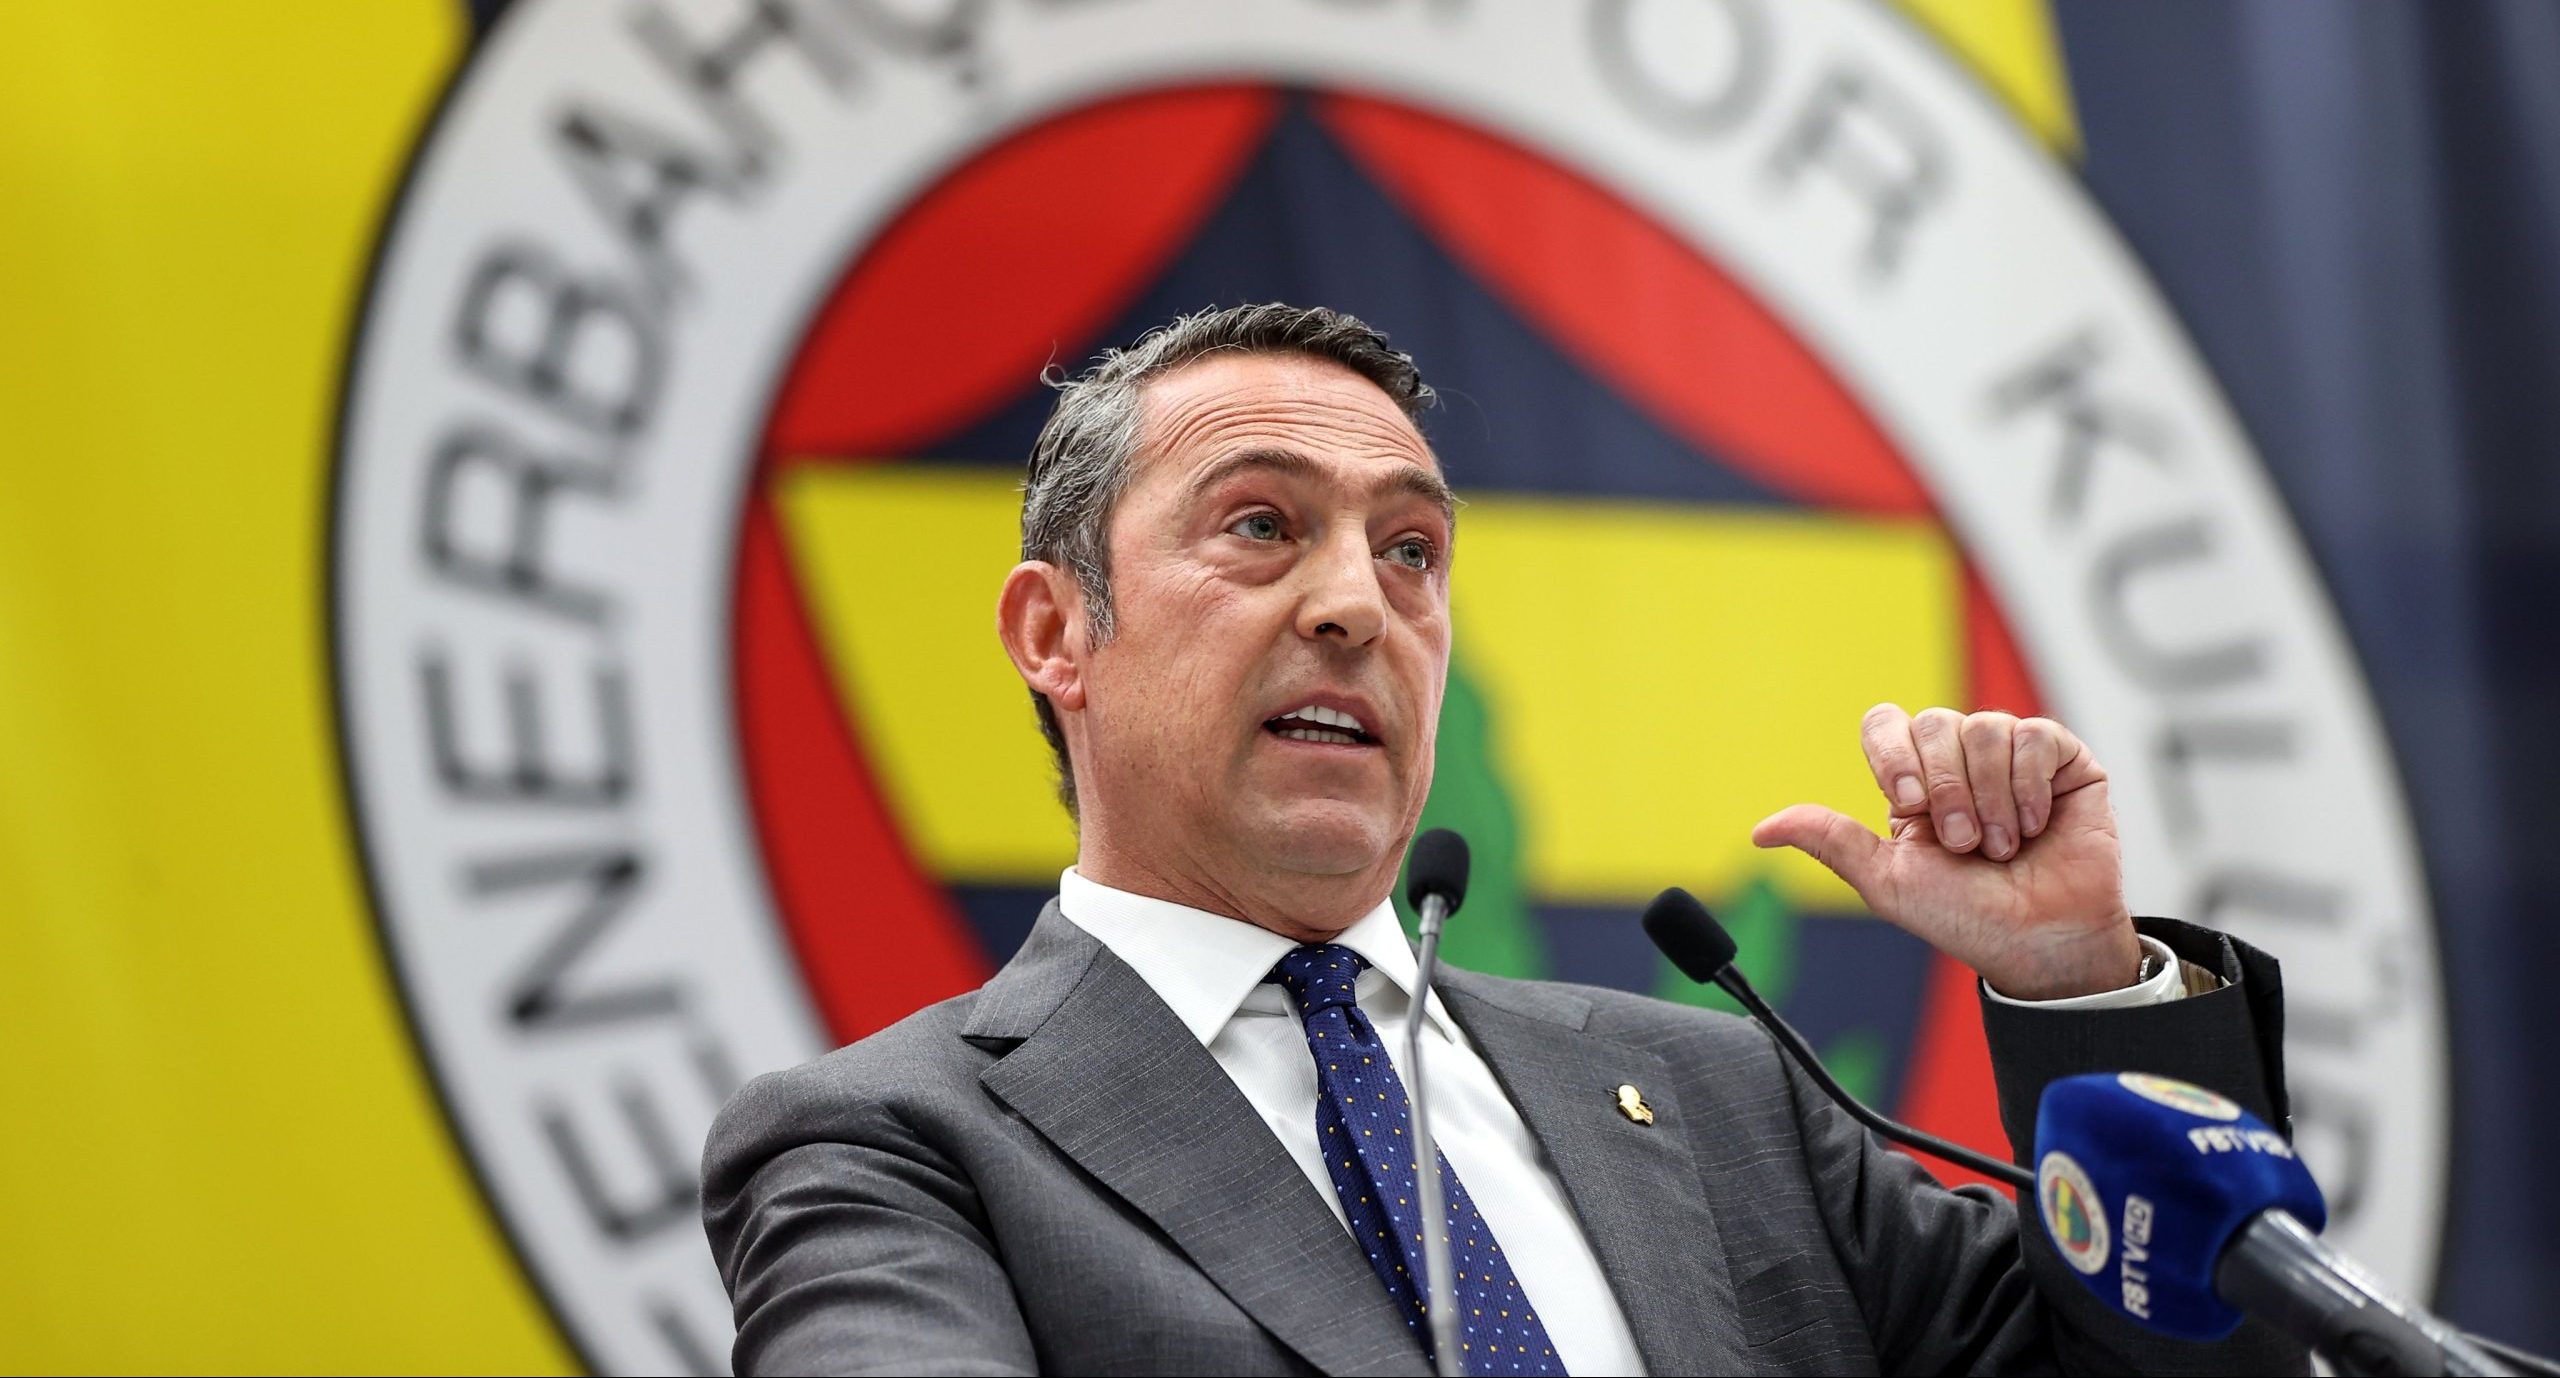 Mehmet Demirkol: Fenerbahçe Başkanı, 'Ben takımı ligden çekiyorum' diyorsa çeker. Ben Fenerbahçe'yi ligden çekilmiş olarak görüyorum